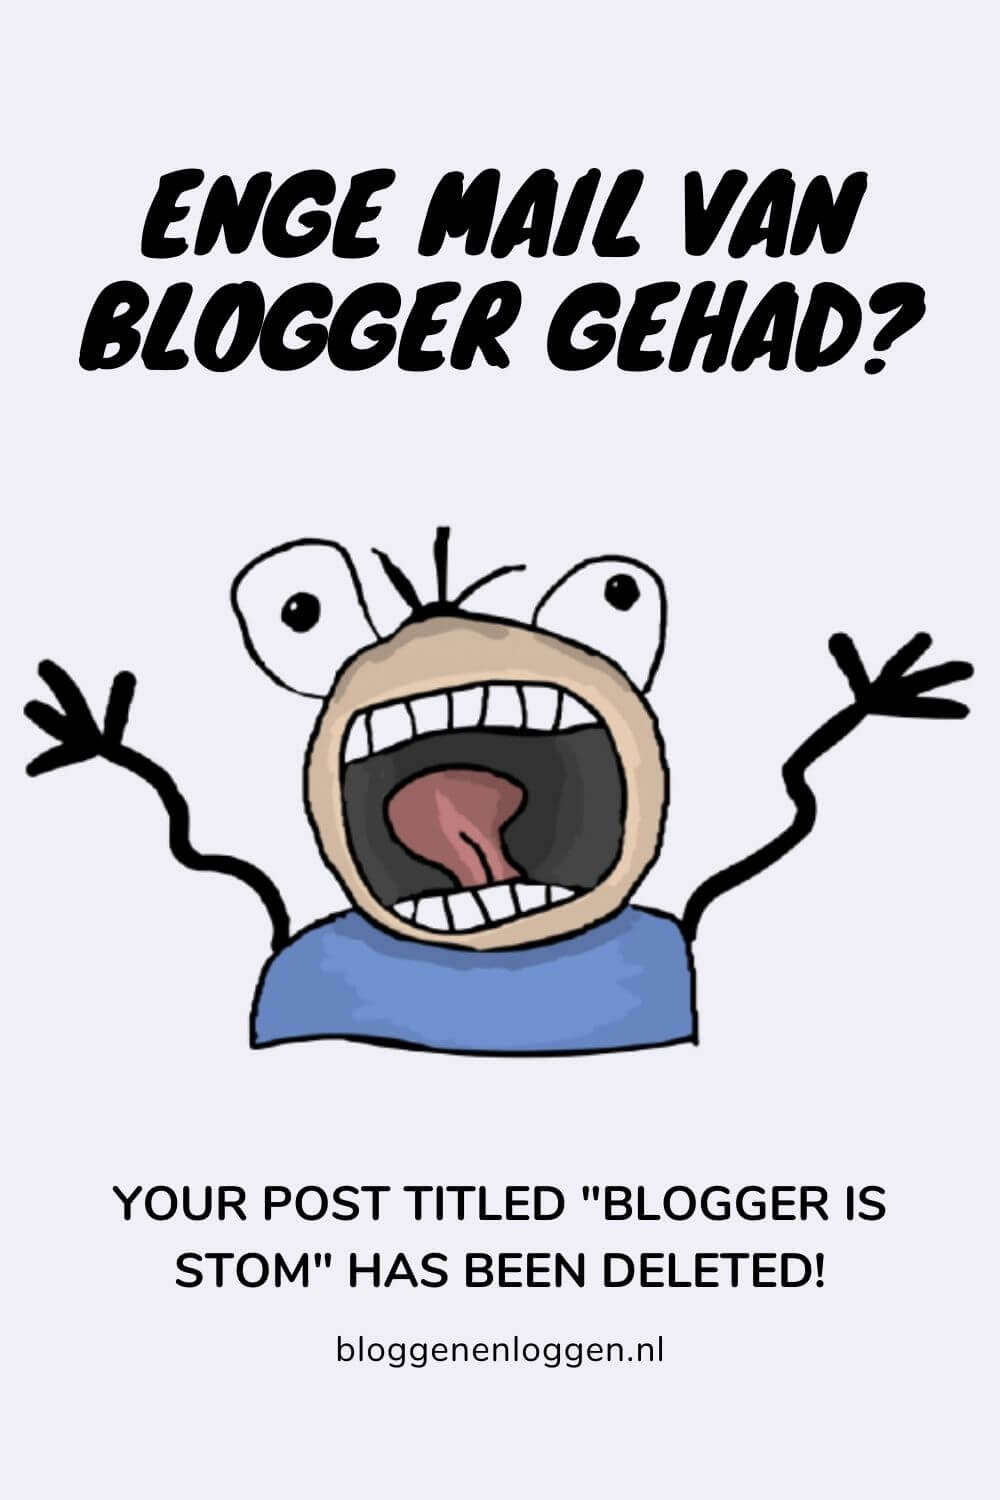 Eng mailtje gehad van Blogger: Post deleted? Geen paniek!